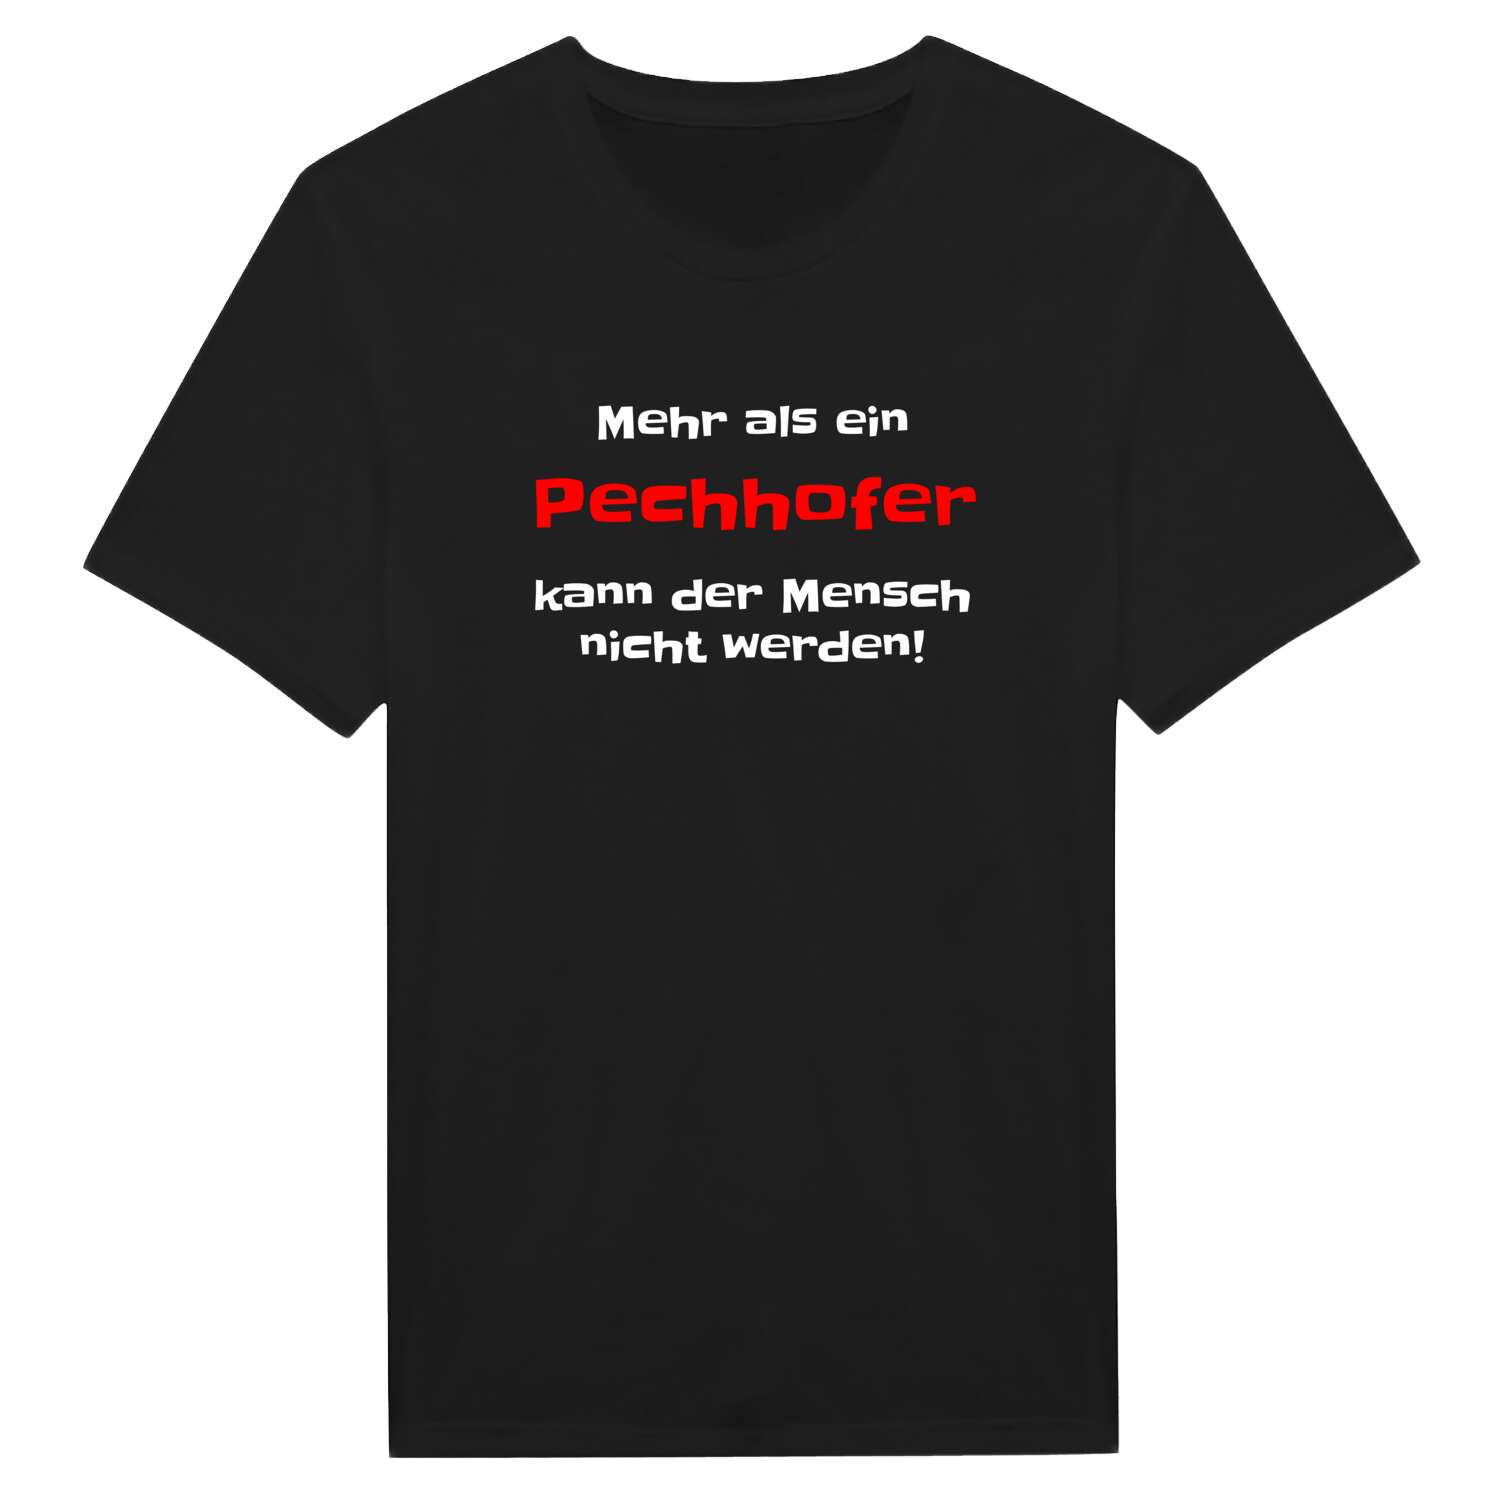 Pechhof T-Shirt »Mehr als ein«